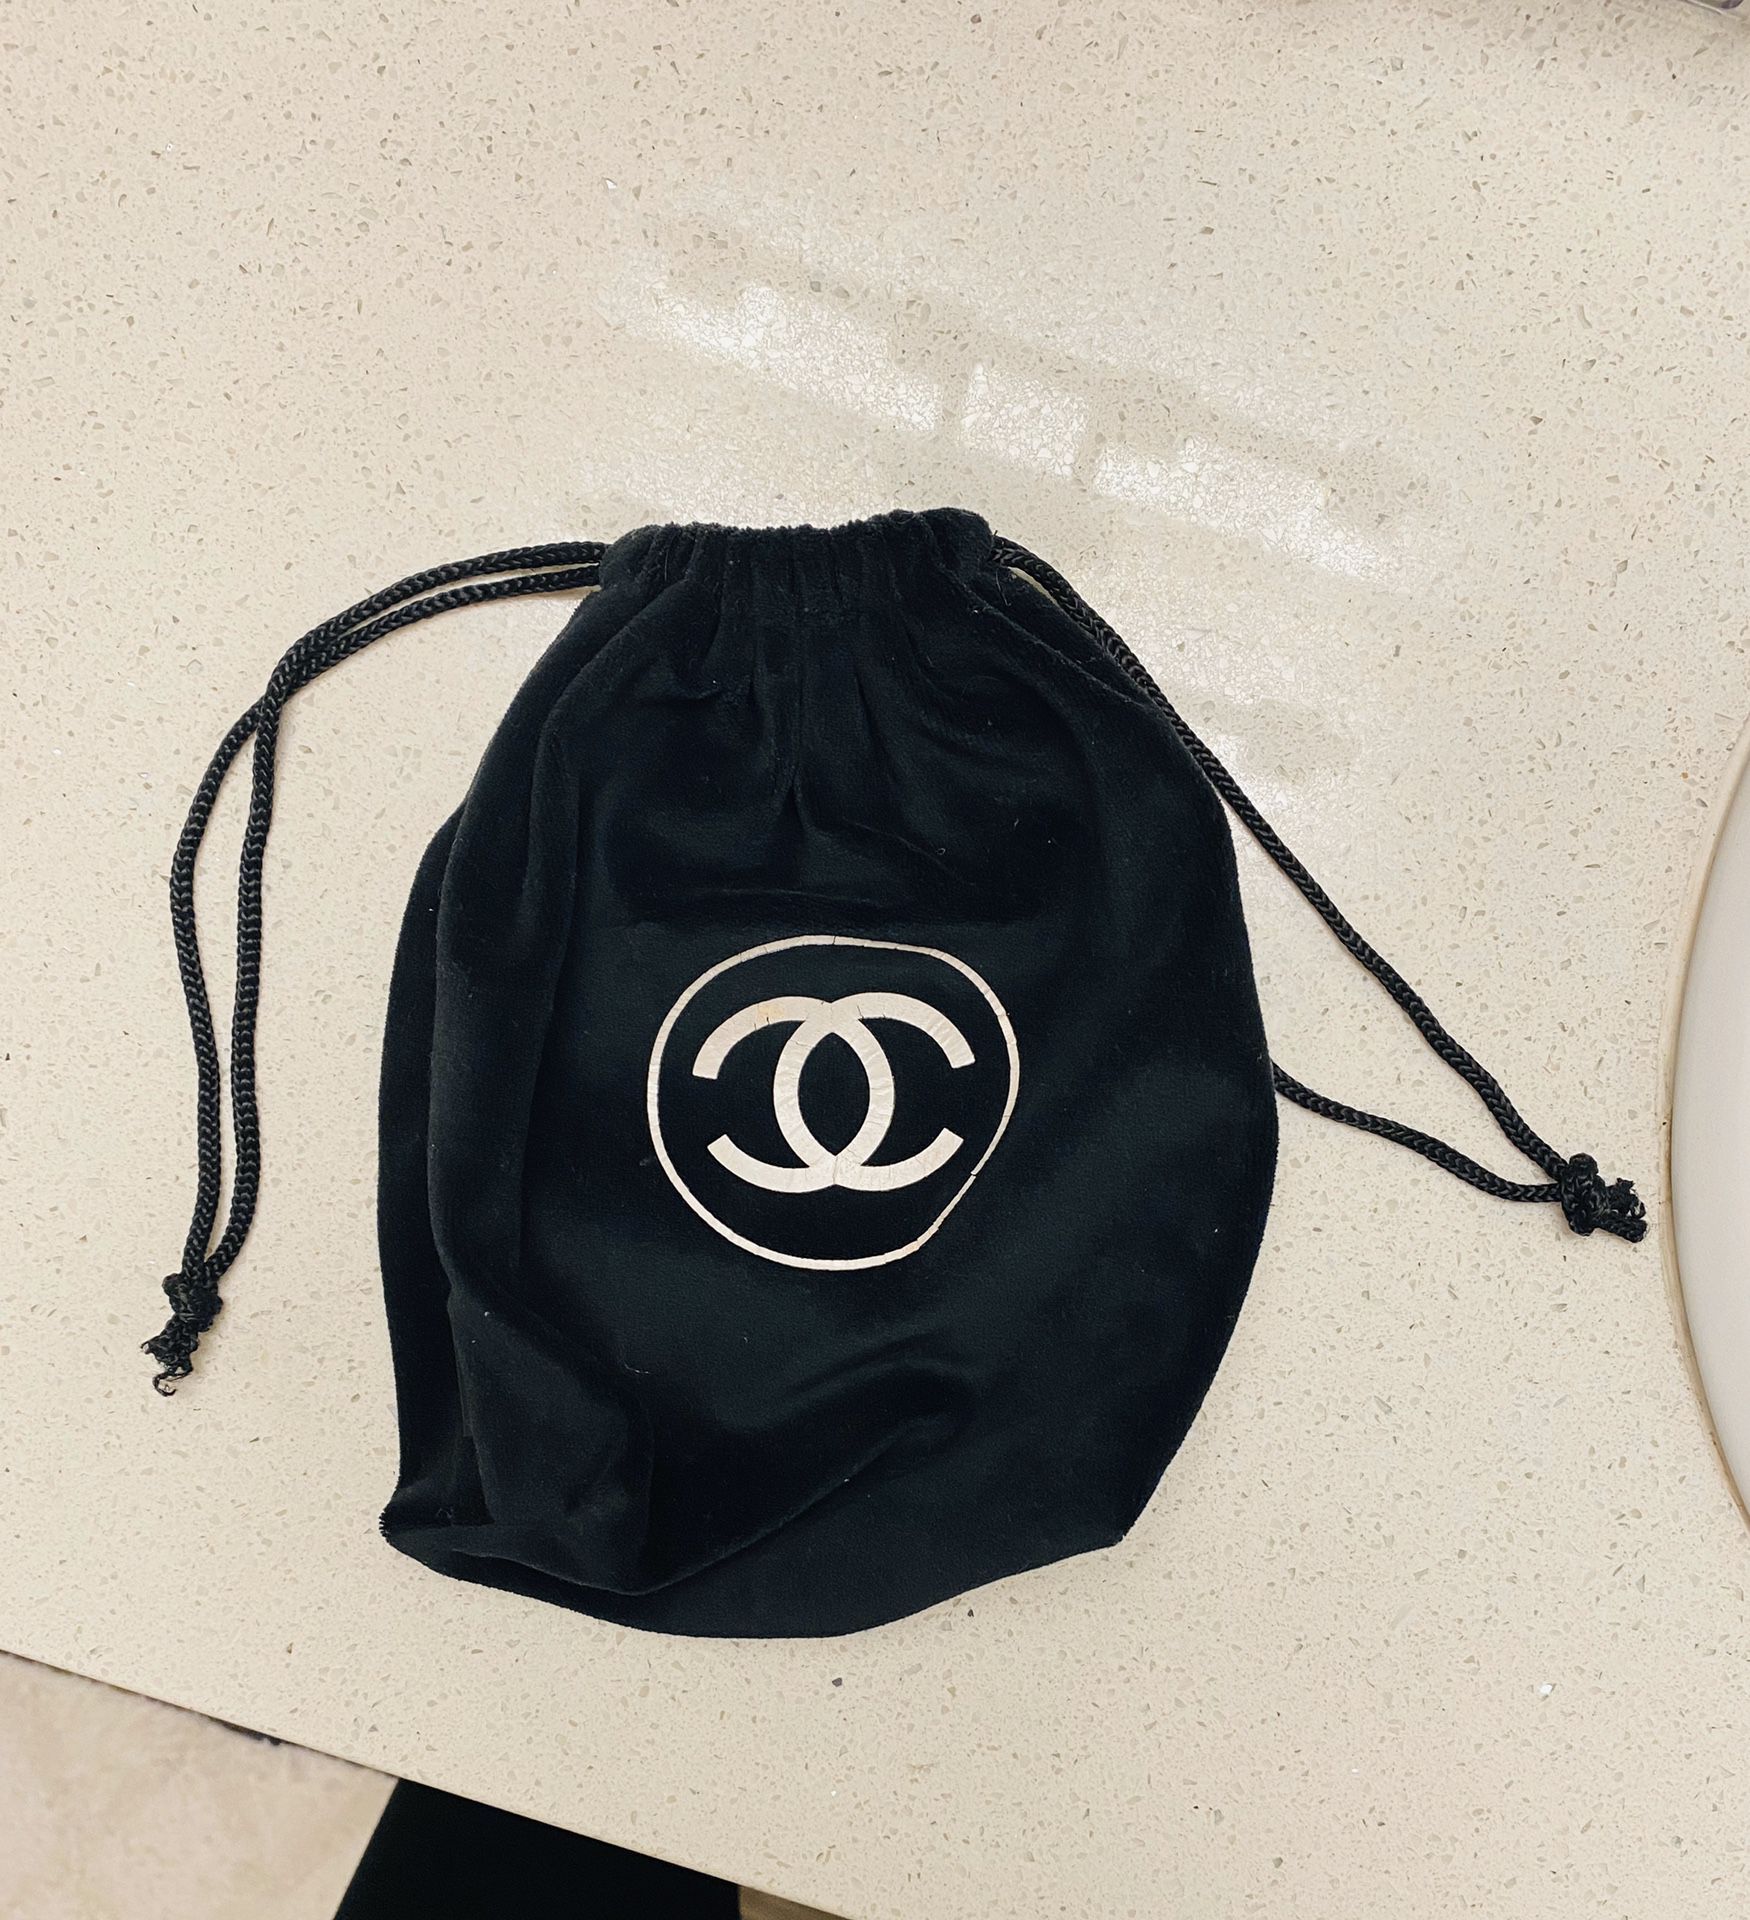 Chanel black velvet drawstring bag